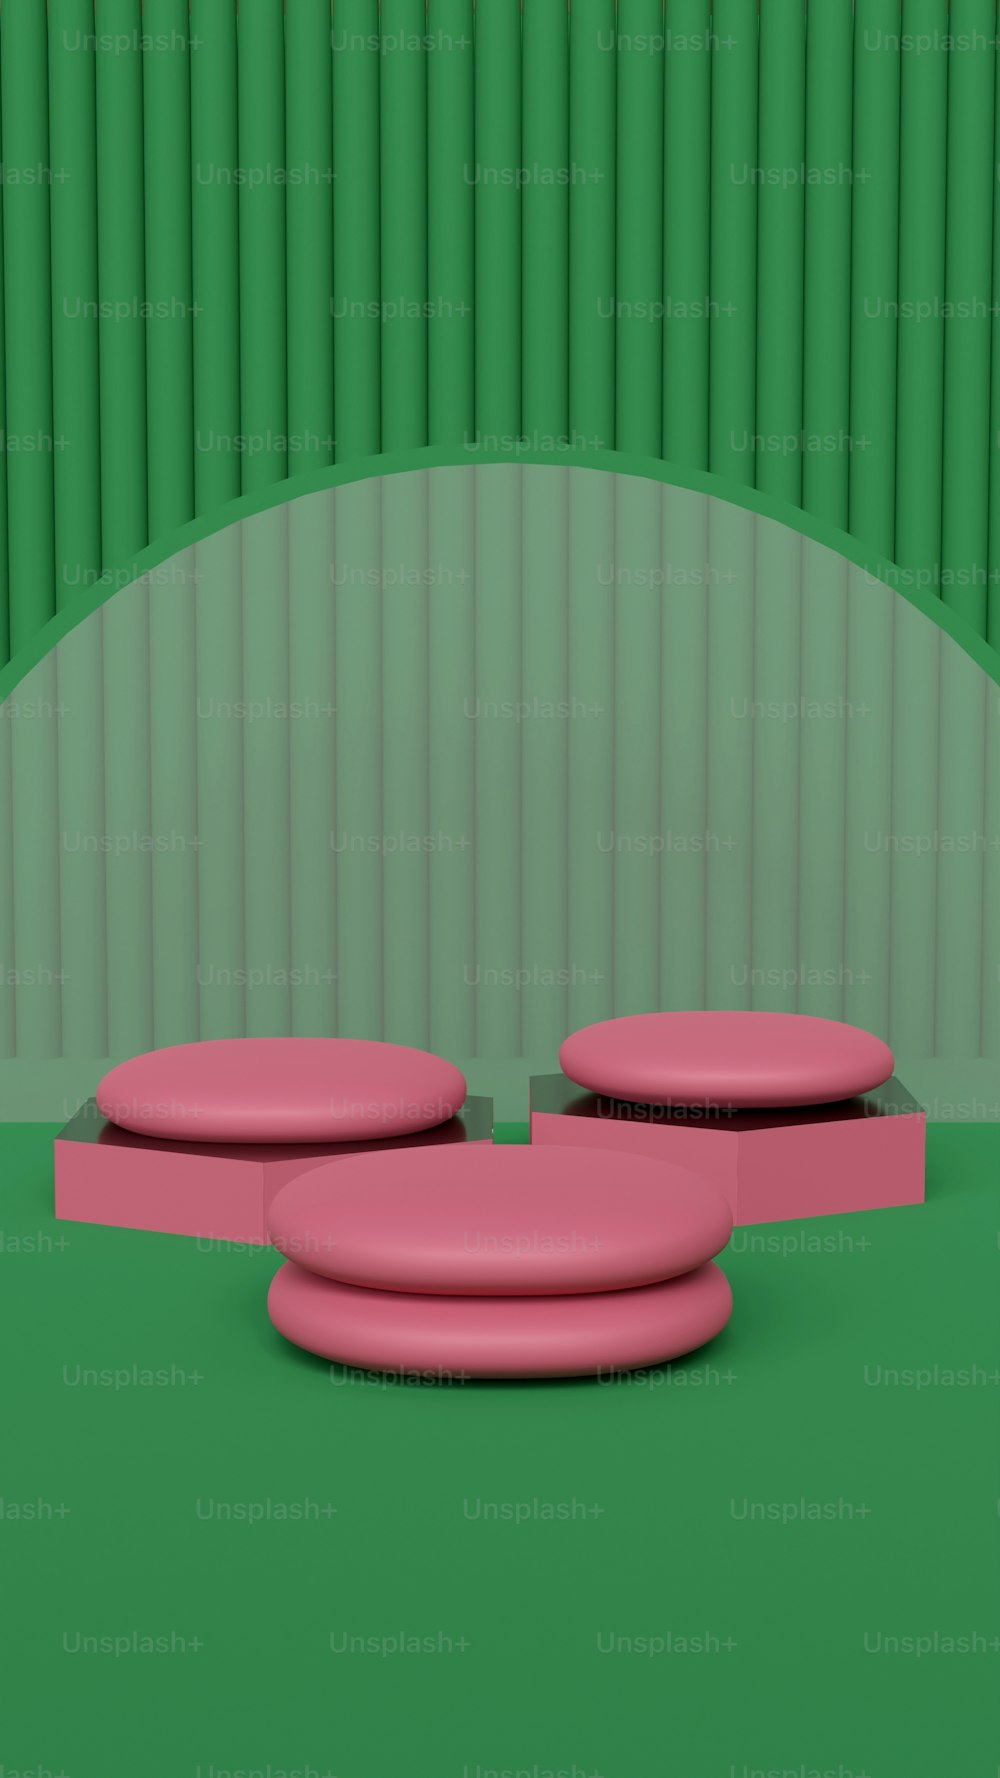 녹색 바닥 위에 앉아 있는 분홍색 물체